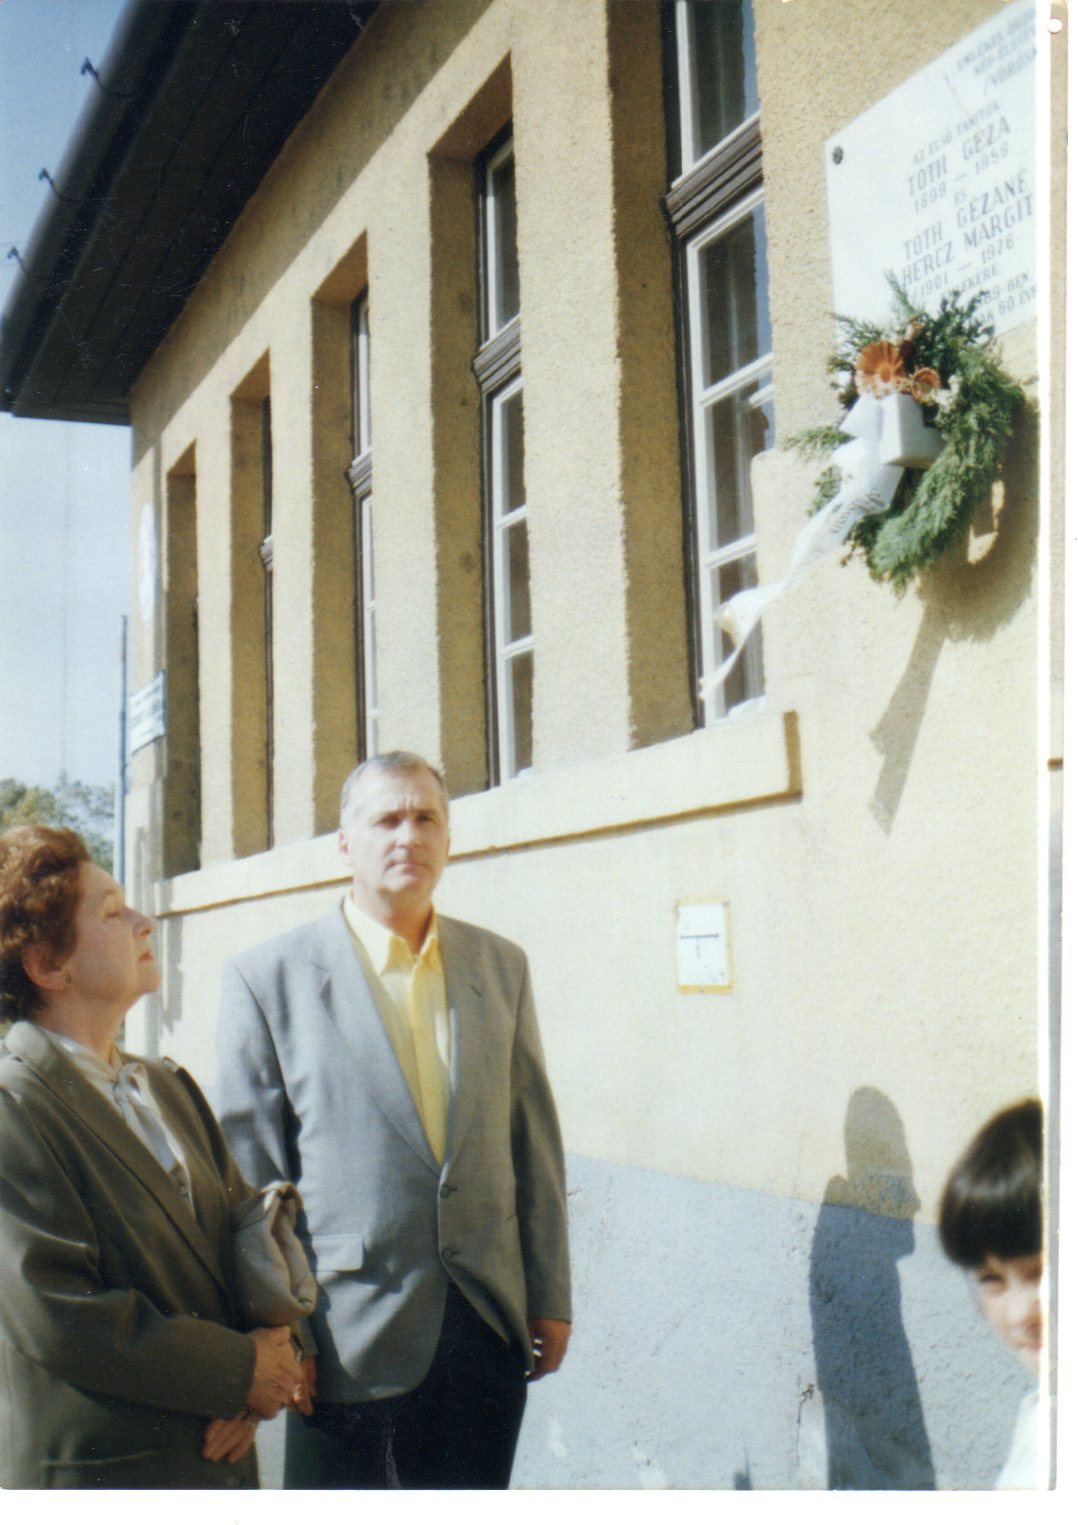 Öcsémmel a Halasi úti iskolánál, 1997-ben